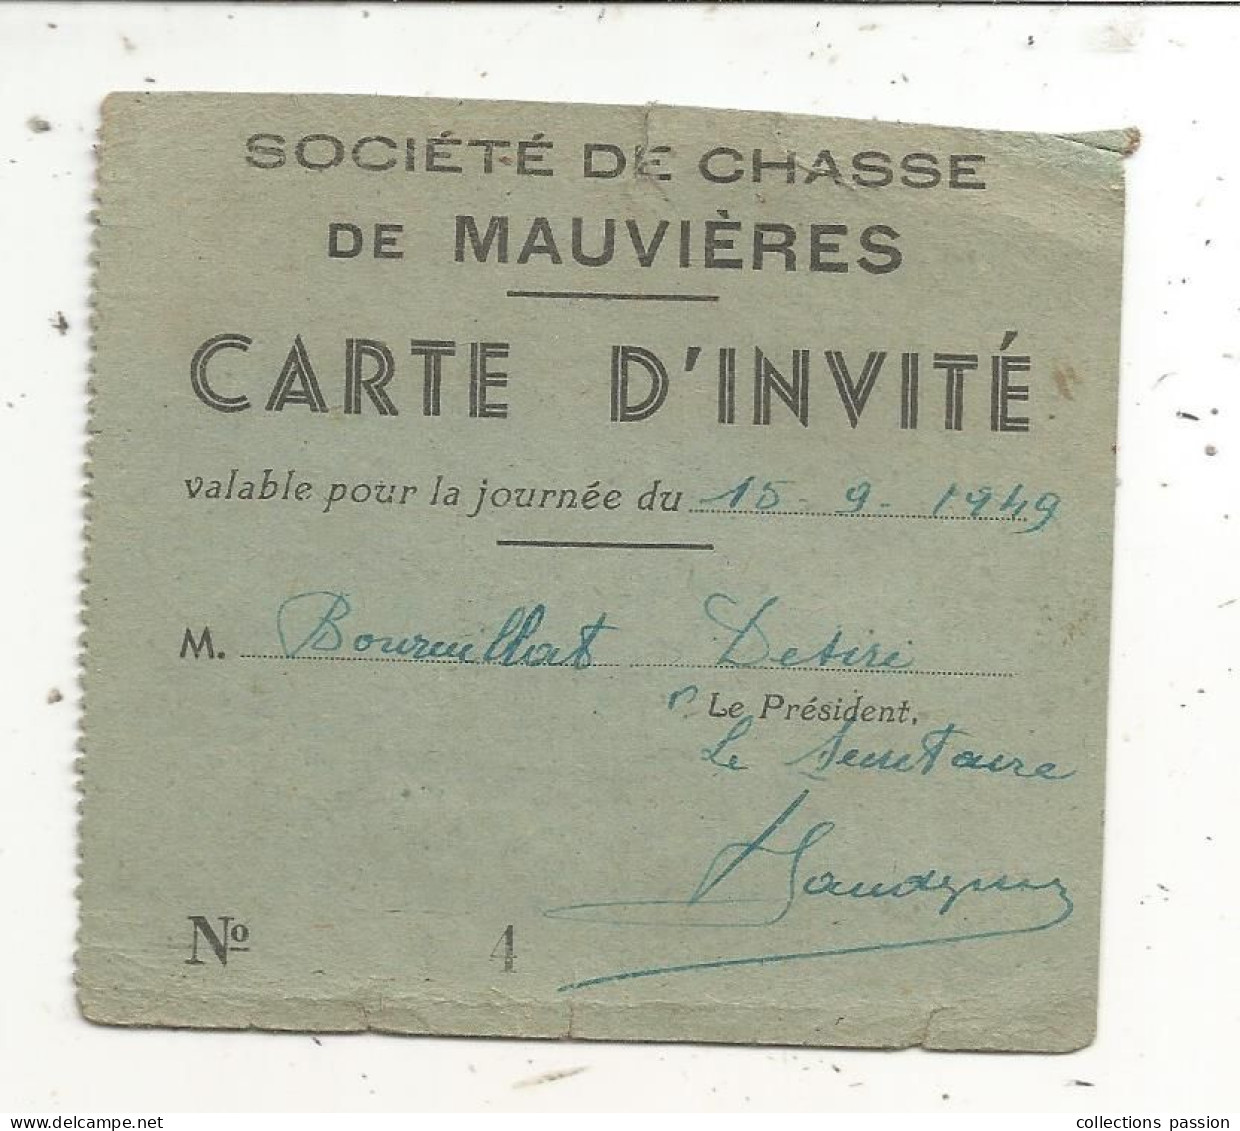 Carte D'invité, Société De Chasse De Mauvières, Indre, 1949 - Cartes De Membre